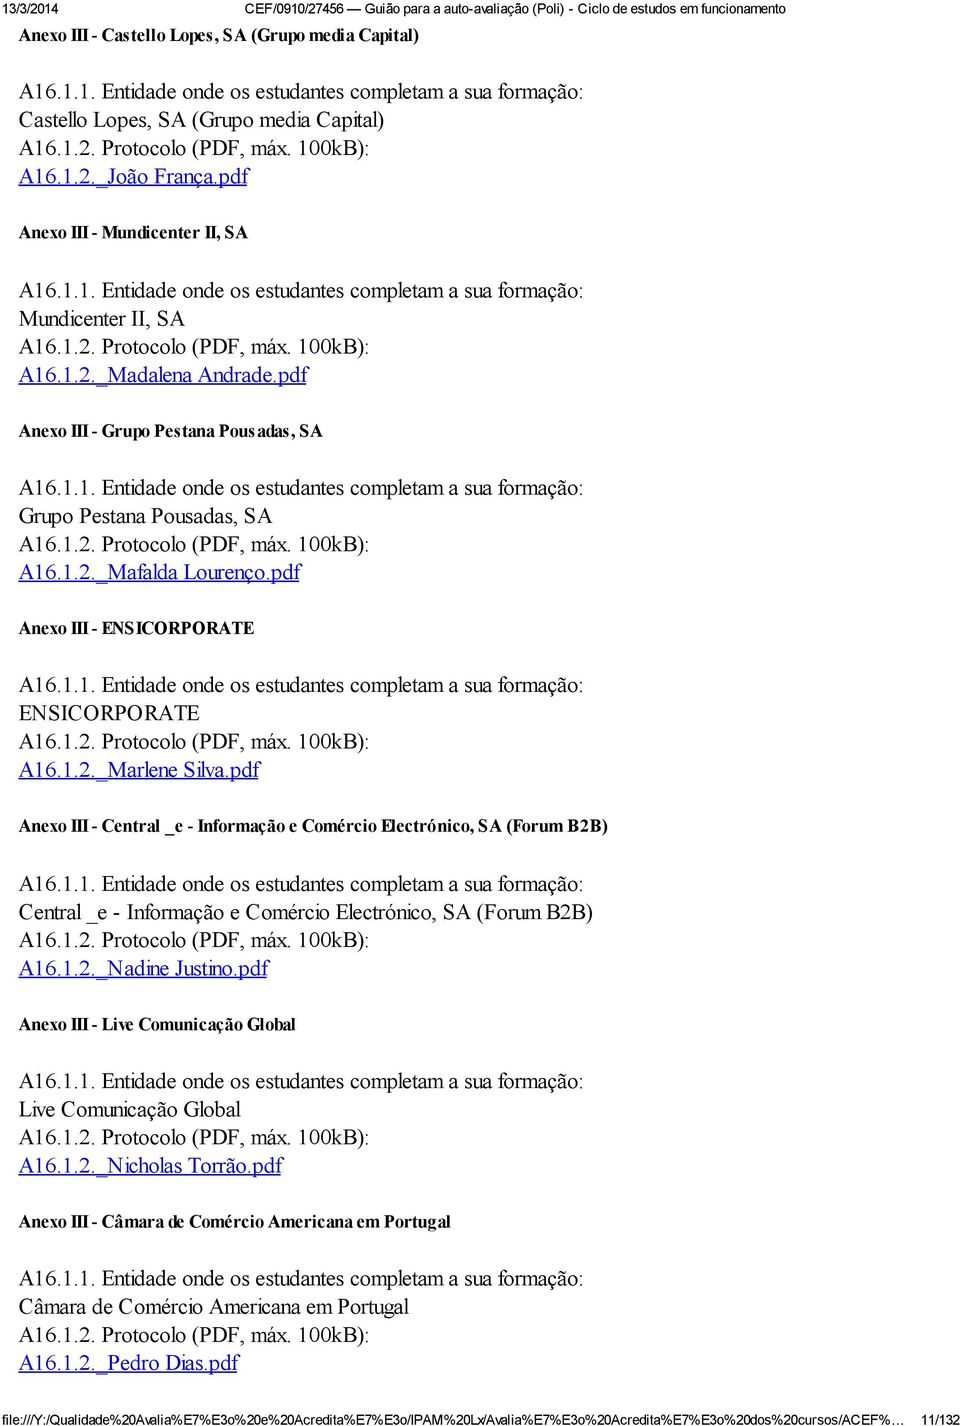 pdf Anexo III - Grupo Pestana Pousadas, SA A16.1.1. Entidade onde os estudantes completam a sua formação: Grupo Pestana Pousadas, SA A16.1.2. Protocolo (PDF, máx. 100kB): A16.1.2._Mafalda Lourenço.